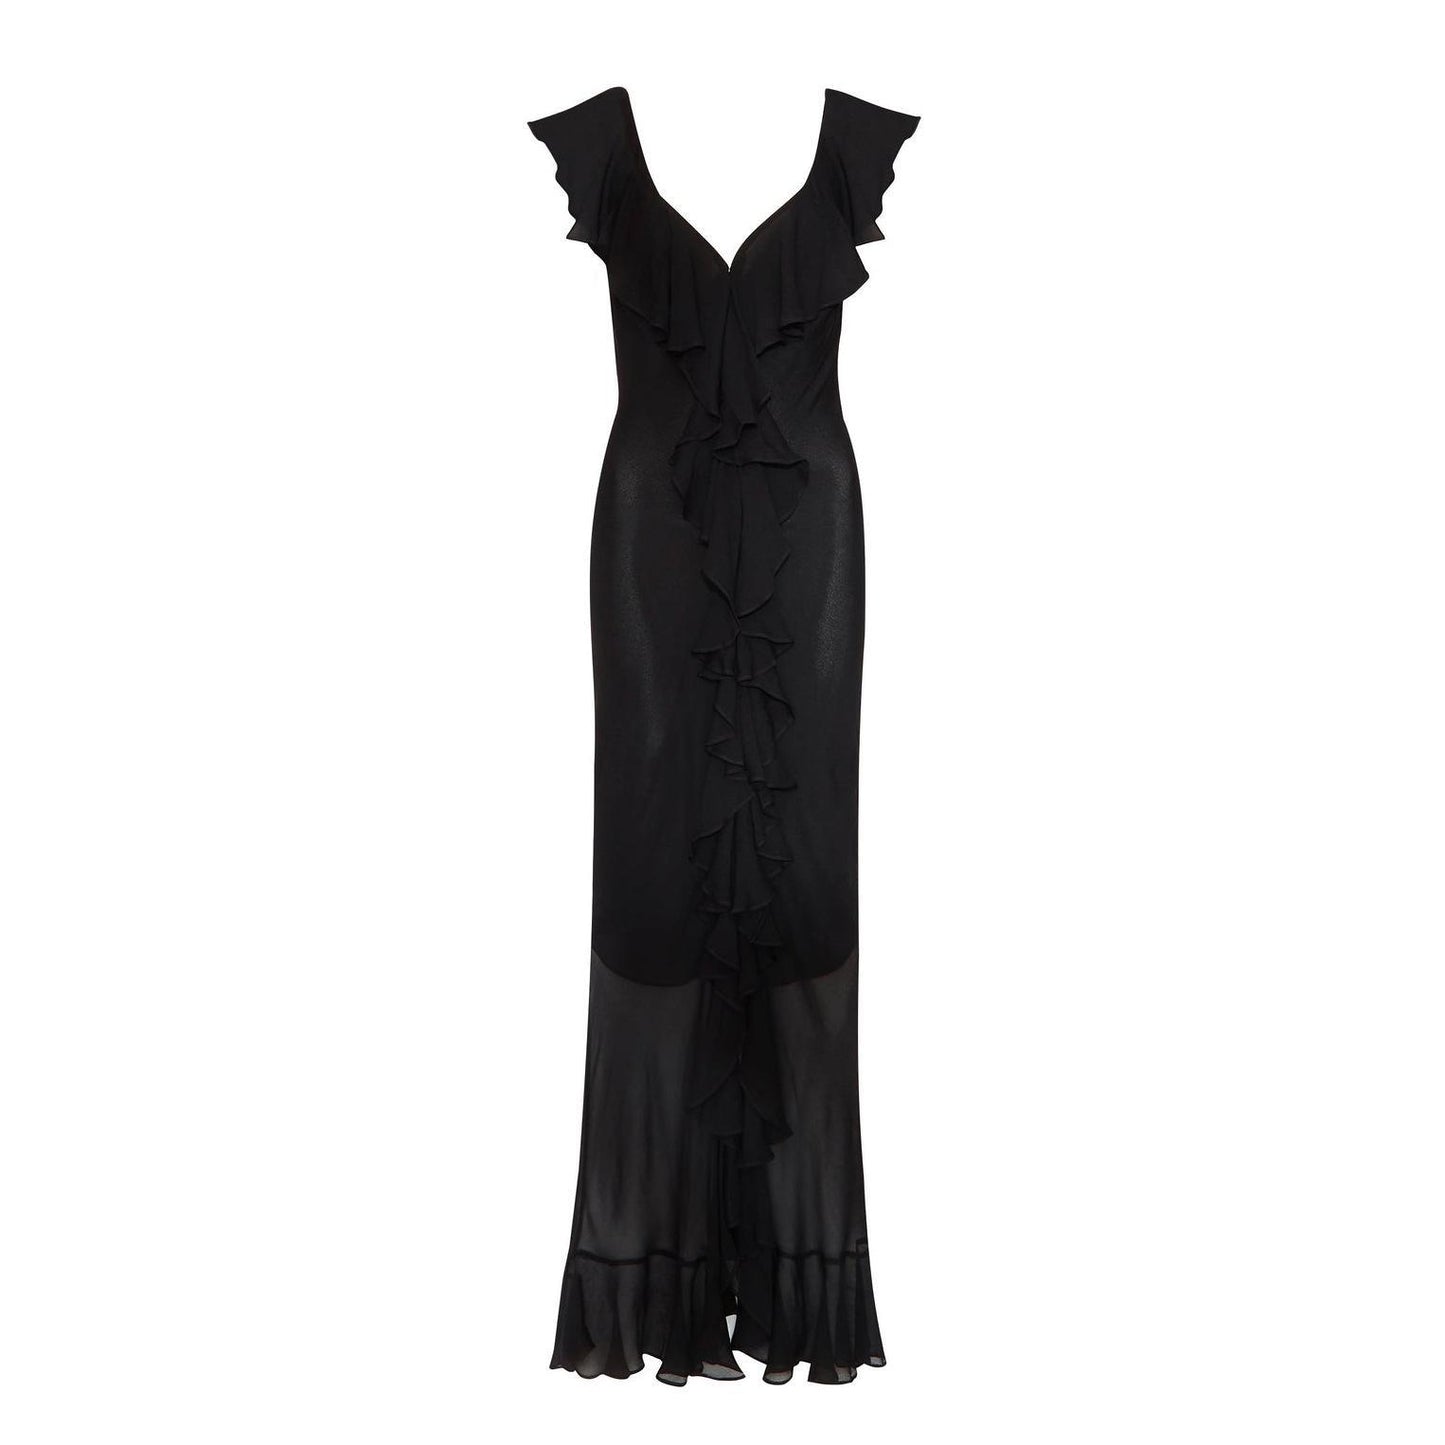 Chiffon-Kleid mit V-Ausschnitt, schmaler Passform und Schlitz, transparent, unregelmäßig, asymmetrisch, gerüscht